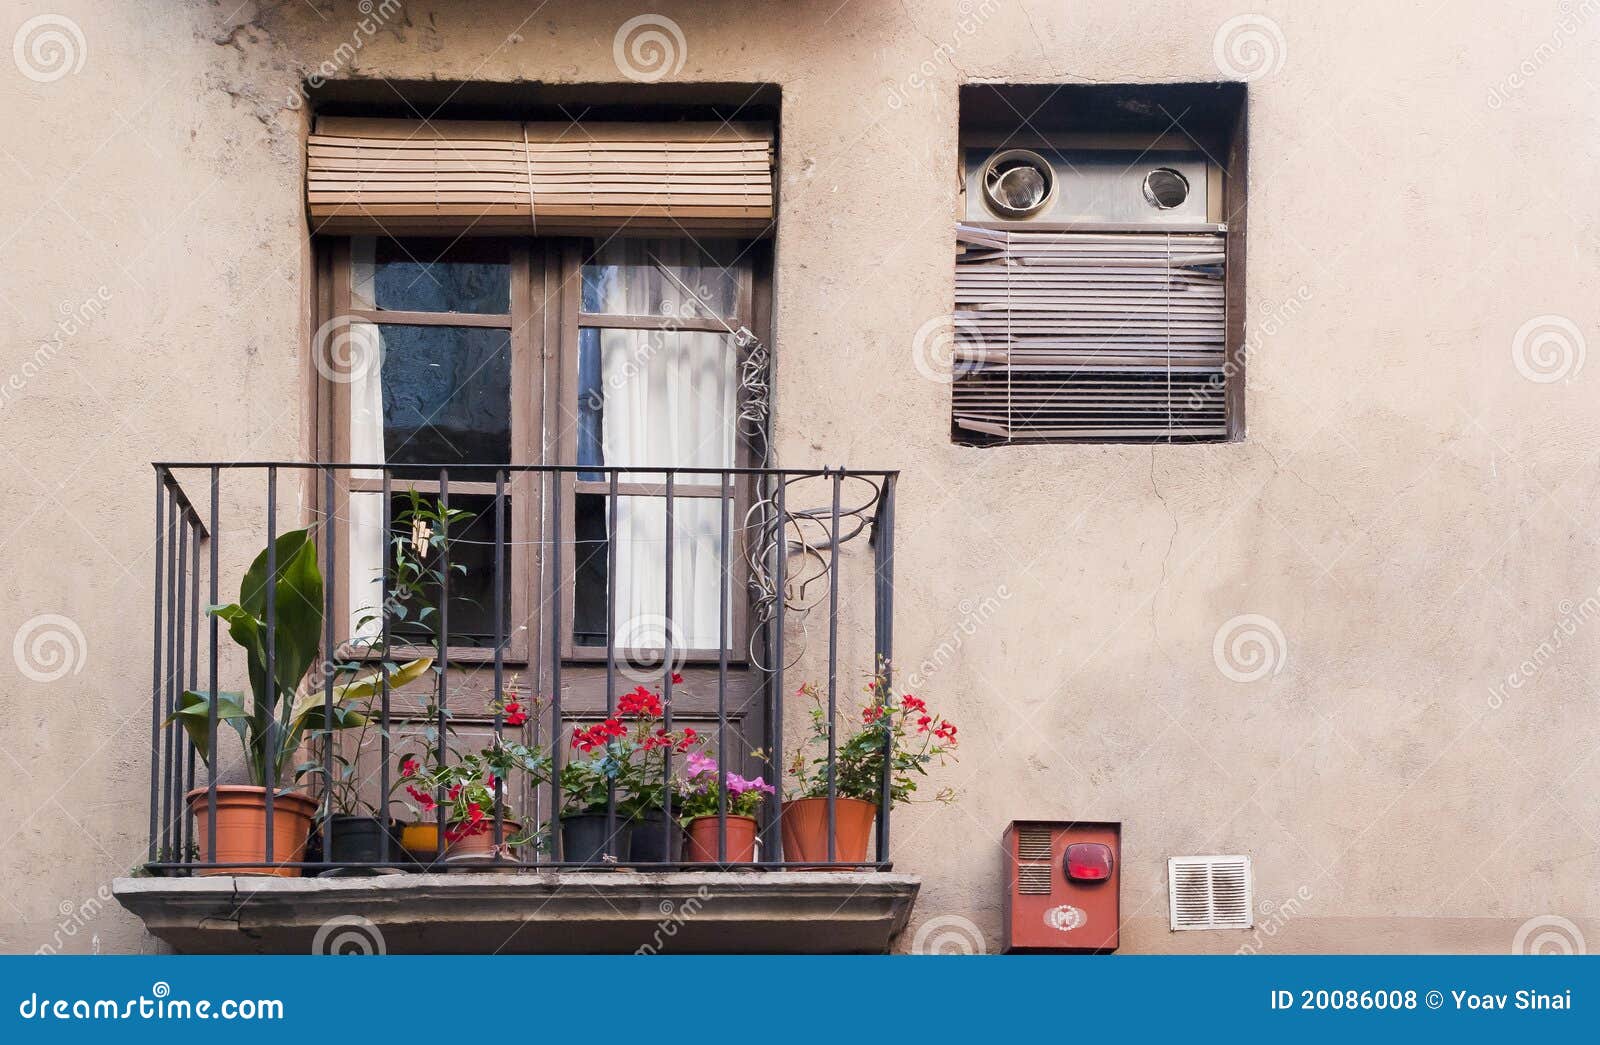 typical balcony and door in catalunya